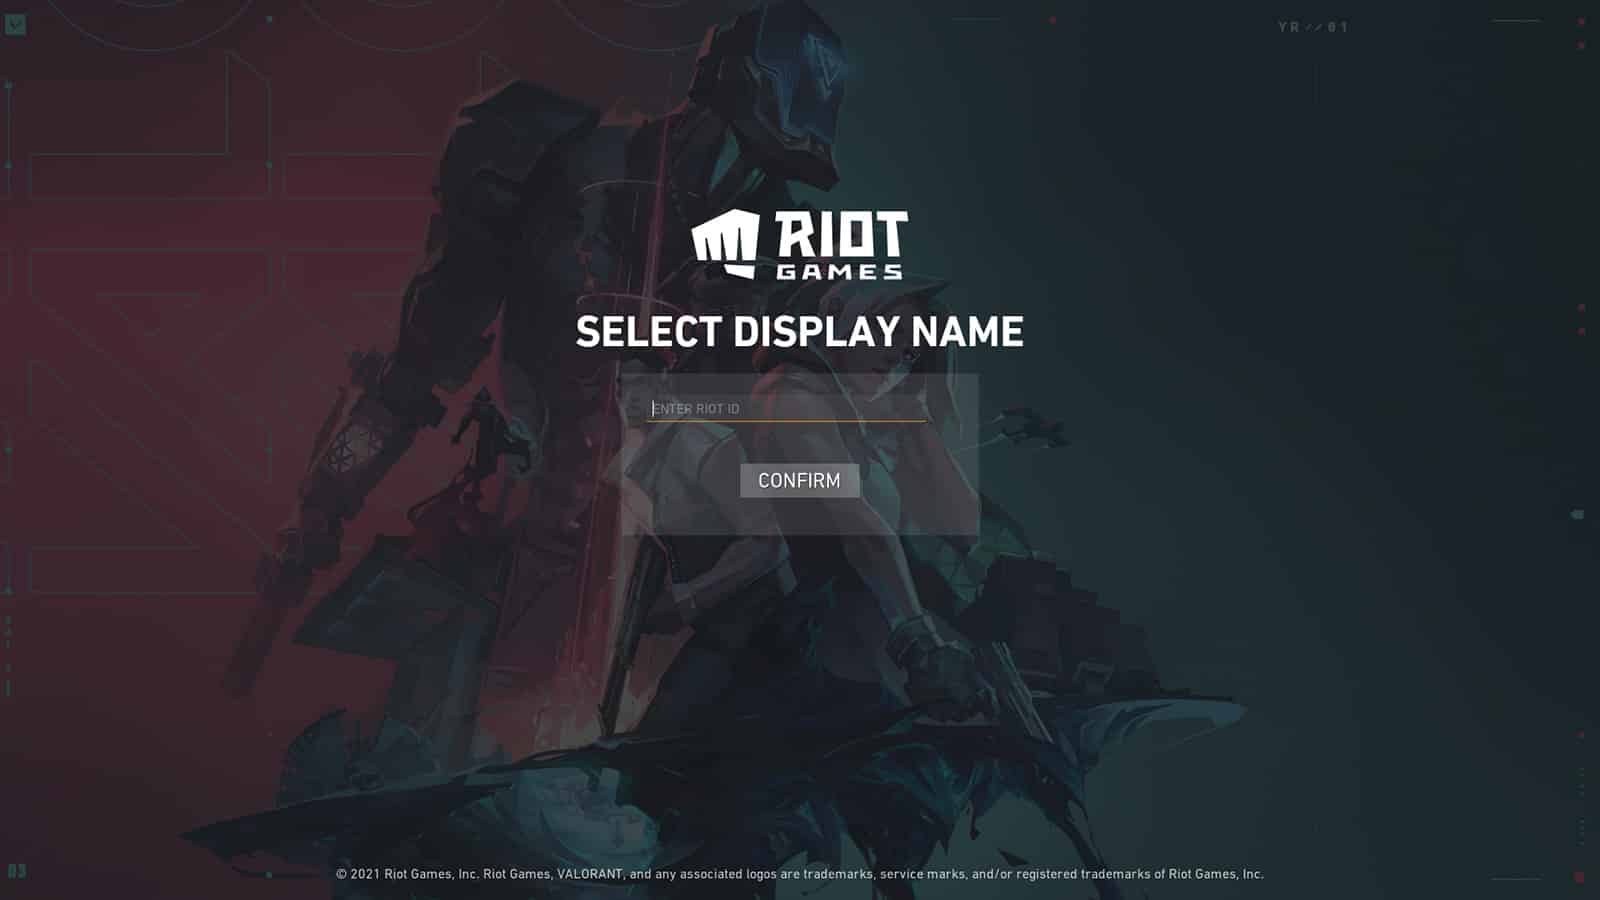 Valorant display name choosing screen